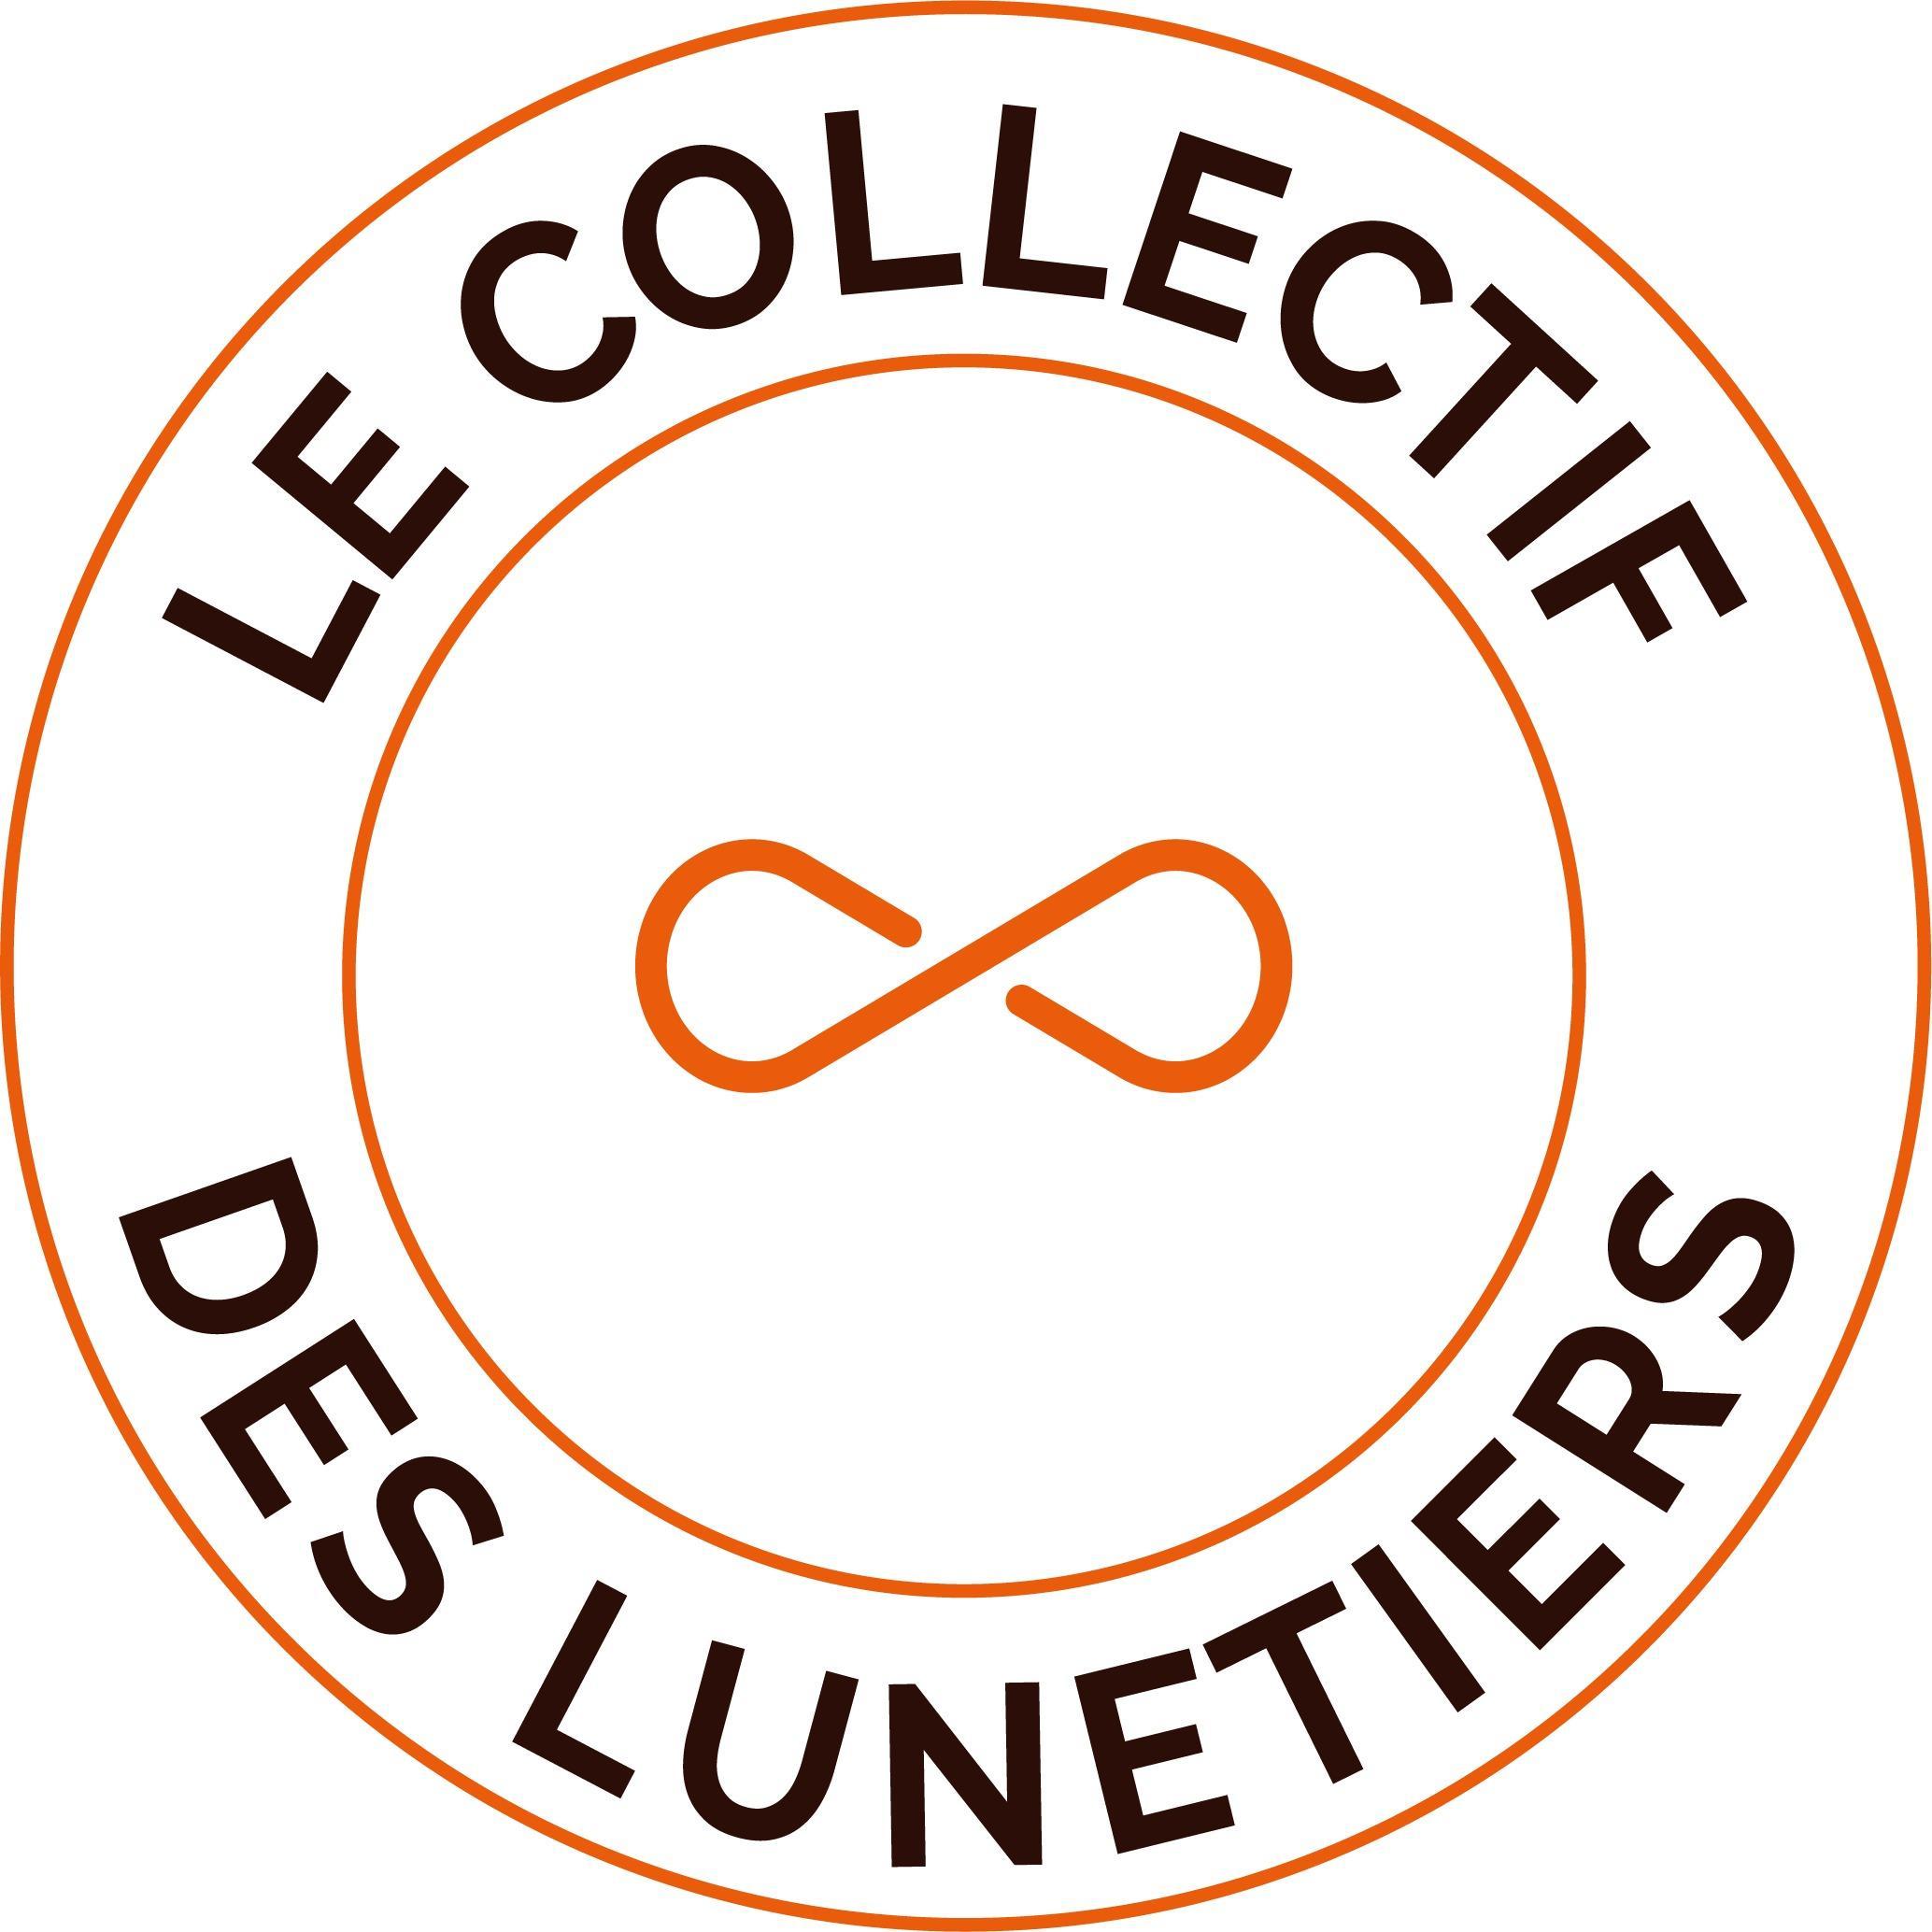 Le Collectif Des Lunetiers Annoeullin